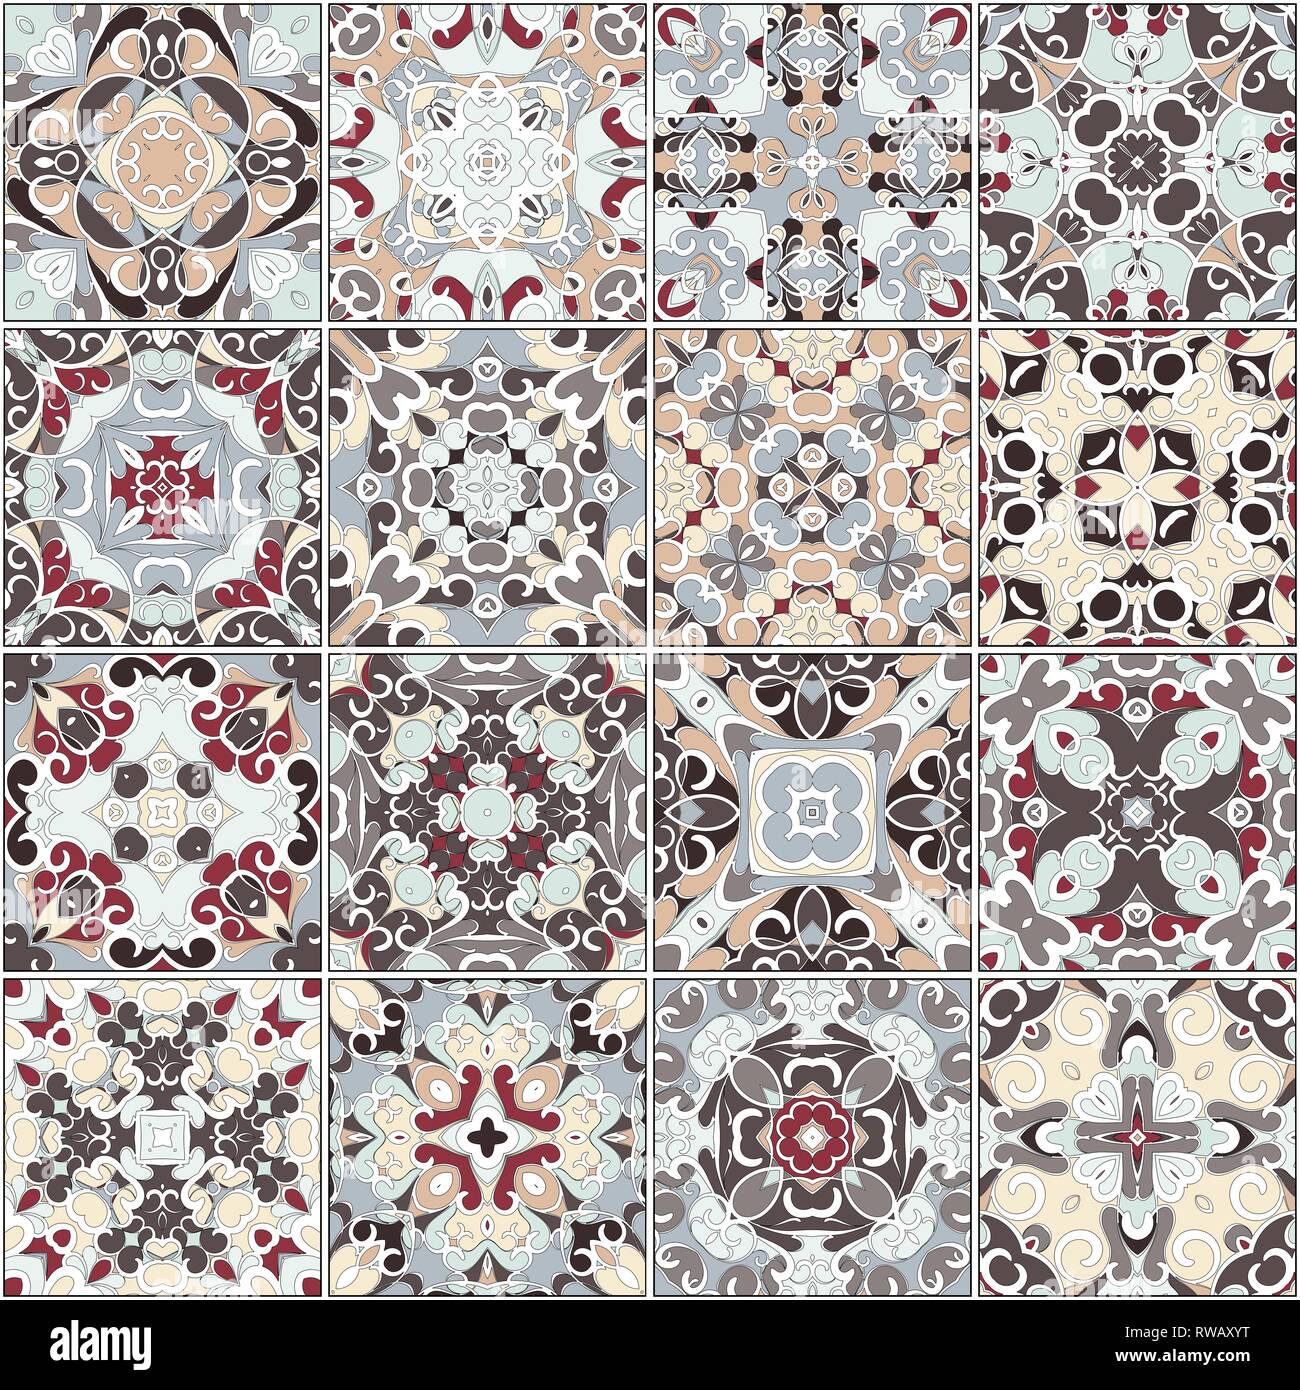 Eine Sammlung von Keramikfliesen in Rot und Beige. Eine Reihe von quadratischen Muster im ethnischen Stil. Vector Illustration. Stock Vektor